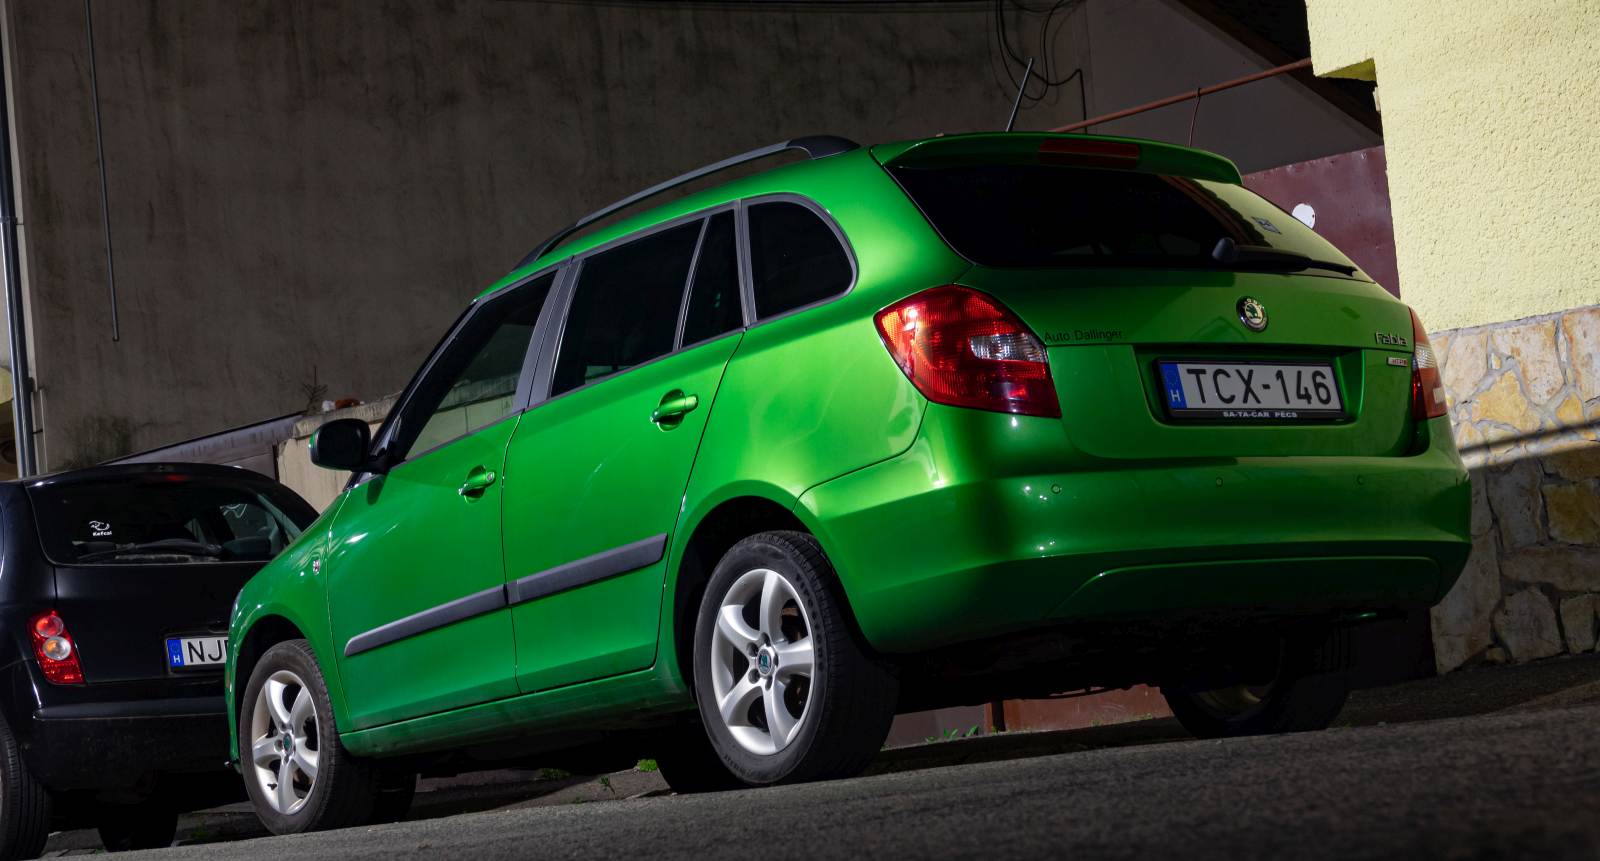 Rückansicht: Skoda Fabia Combi, zweite Generation, in der Farbe Rallye Green (Rallye grün). Foto: August, 2022.